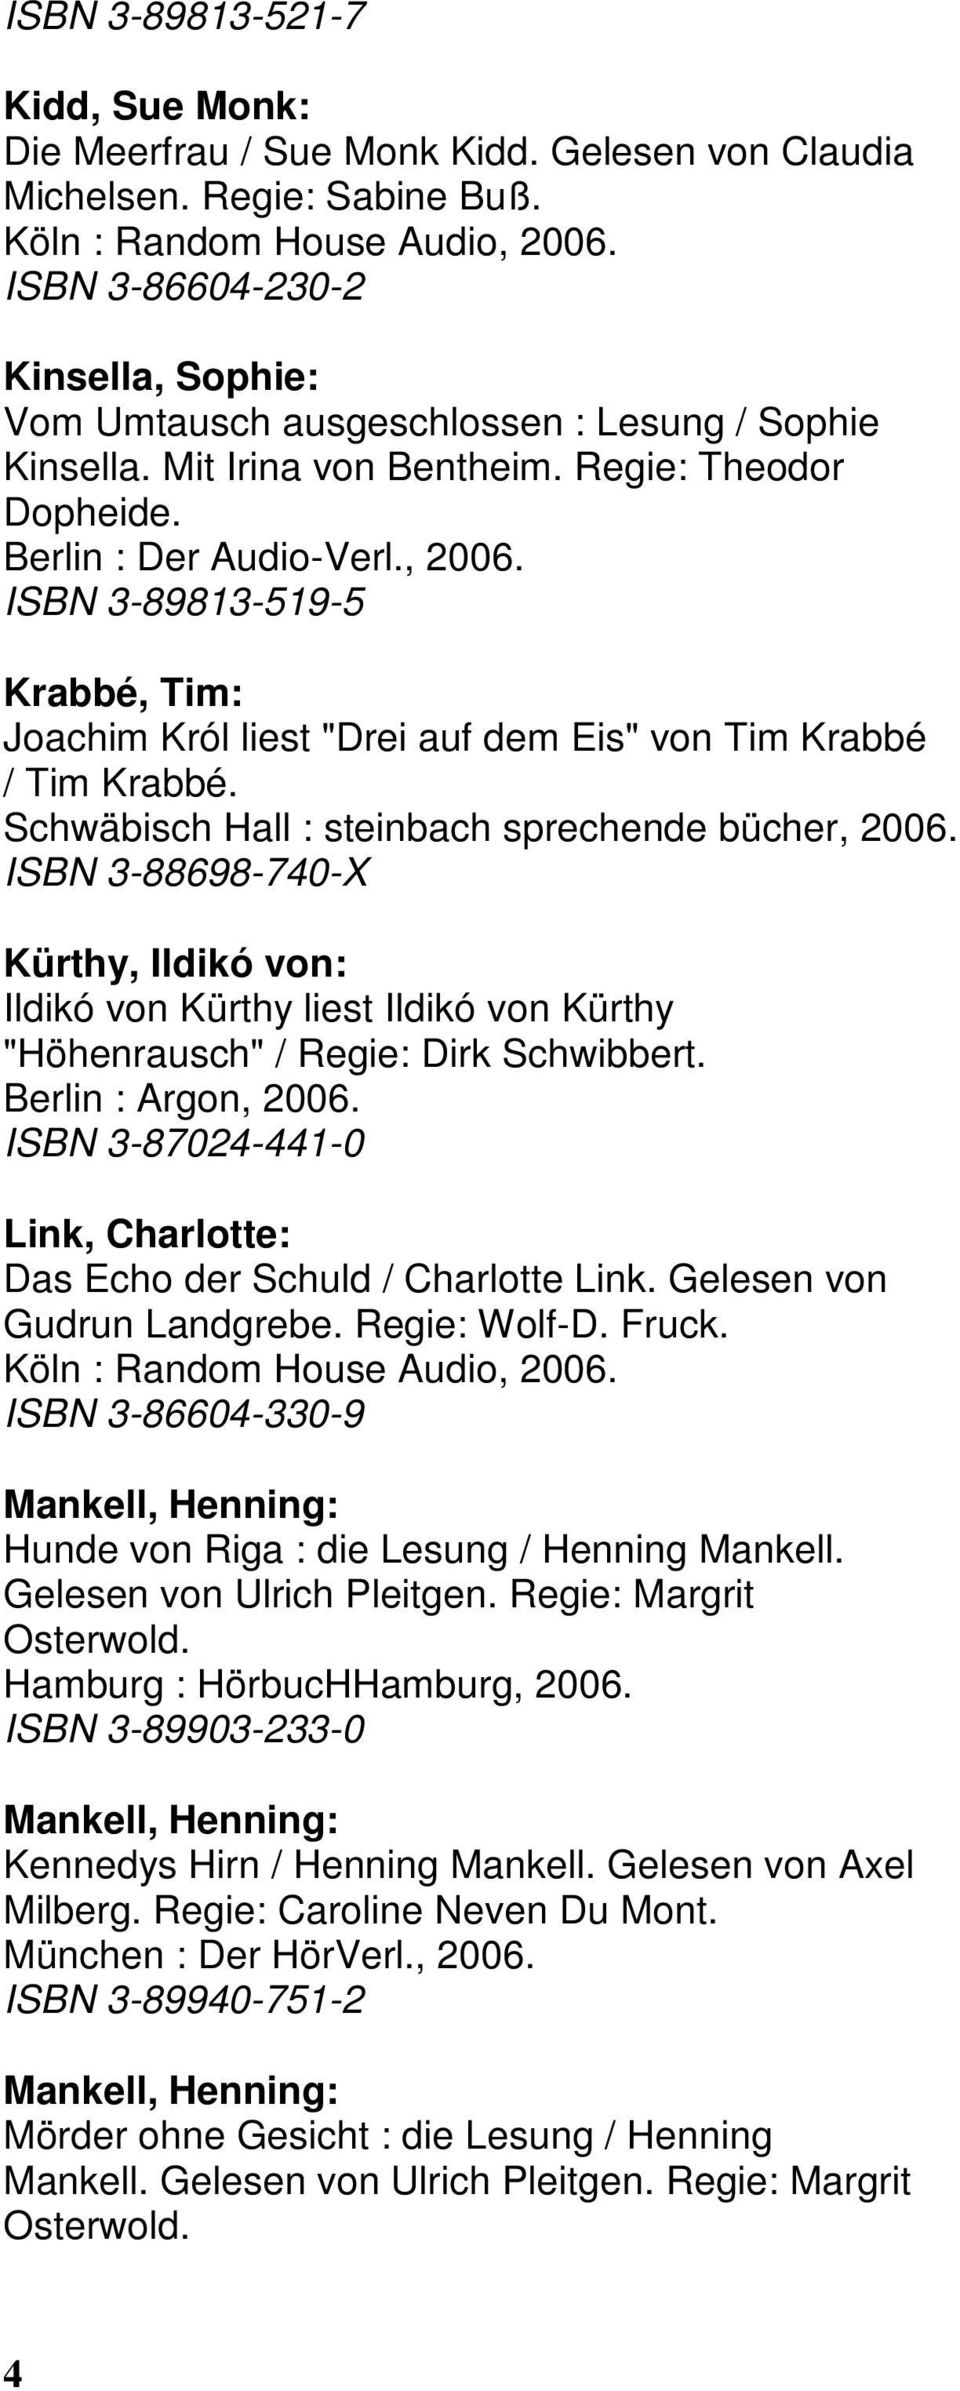 ISBN 3-89813-519-5 Krabbé, Tim: Joachim Król liest "Drei auf dem Eis" von Tim Krabbé / Tim Krabbé. Schwäbisch Hall : steinbach sprechende bücher, 2006.